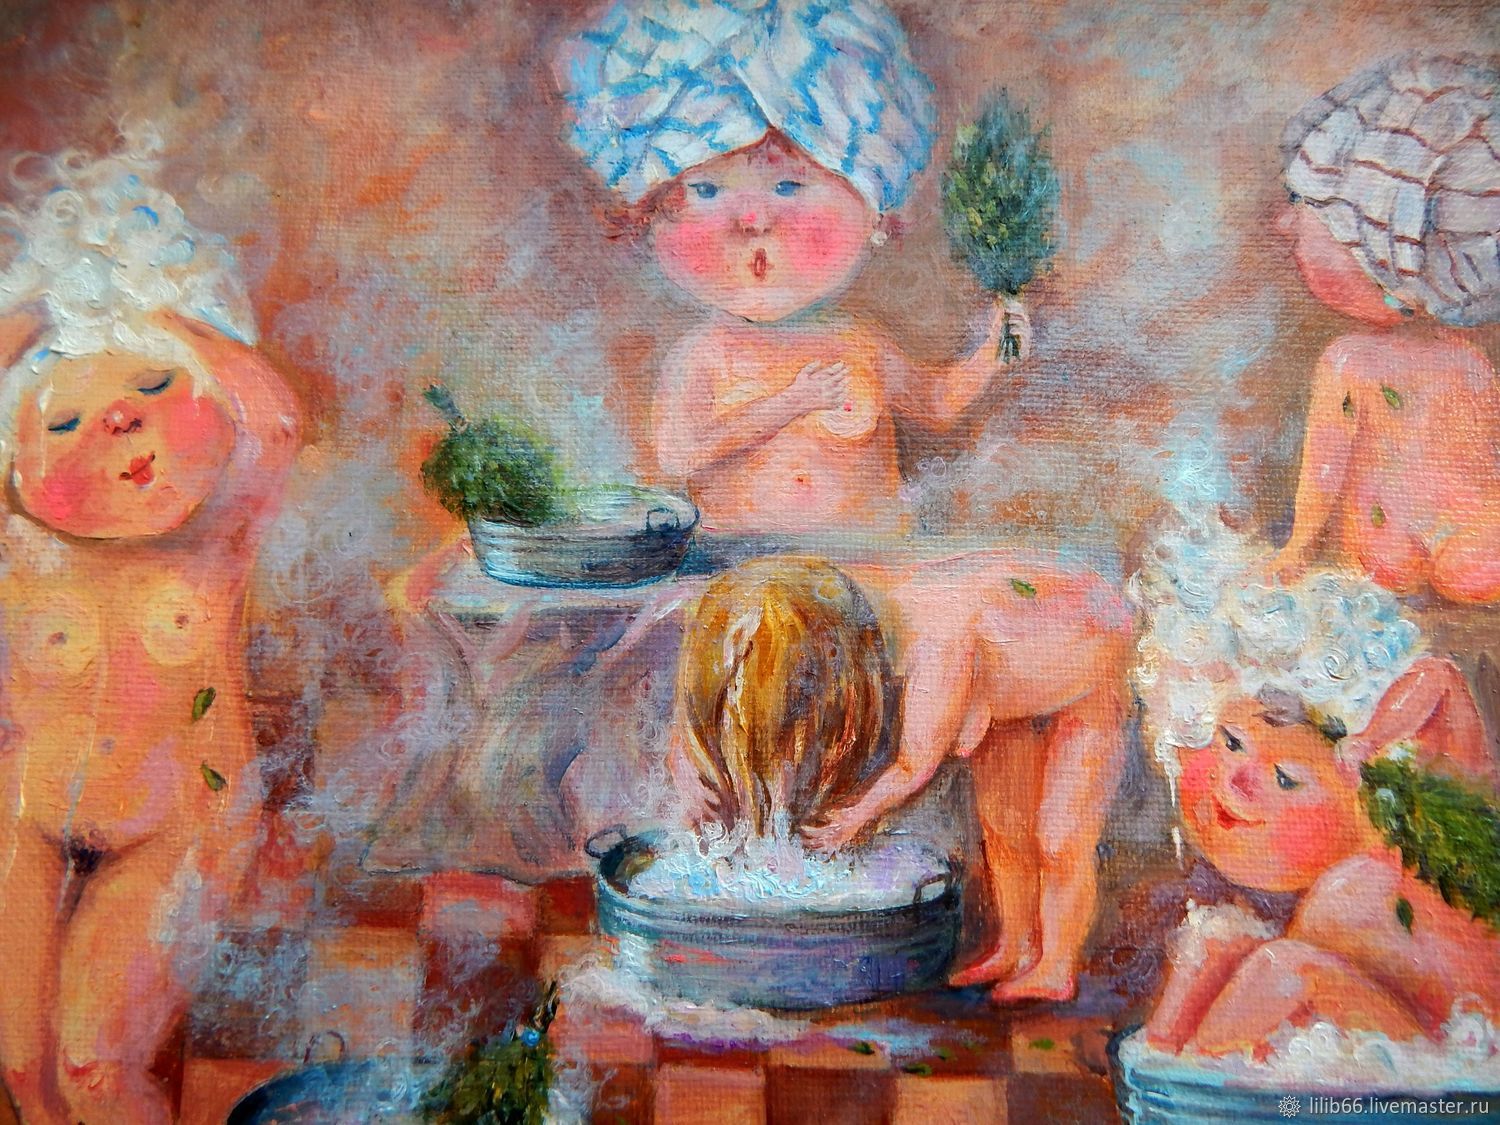 сонник мыться в бане голыми фото 77